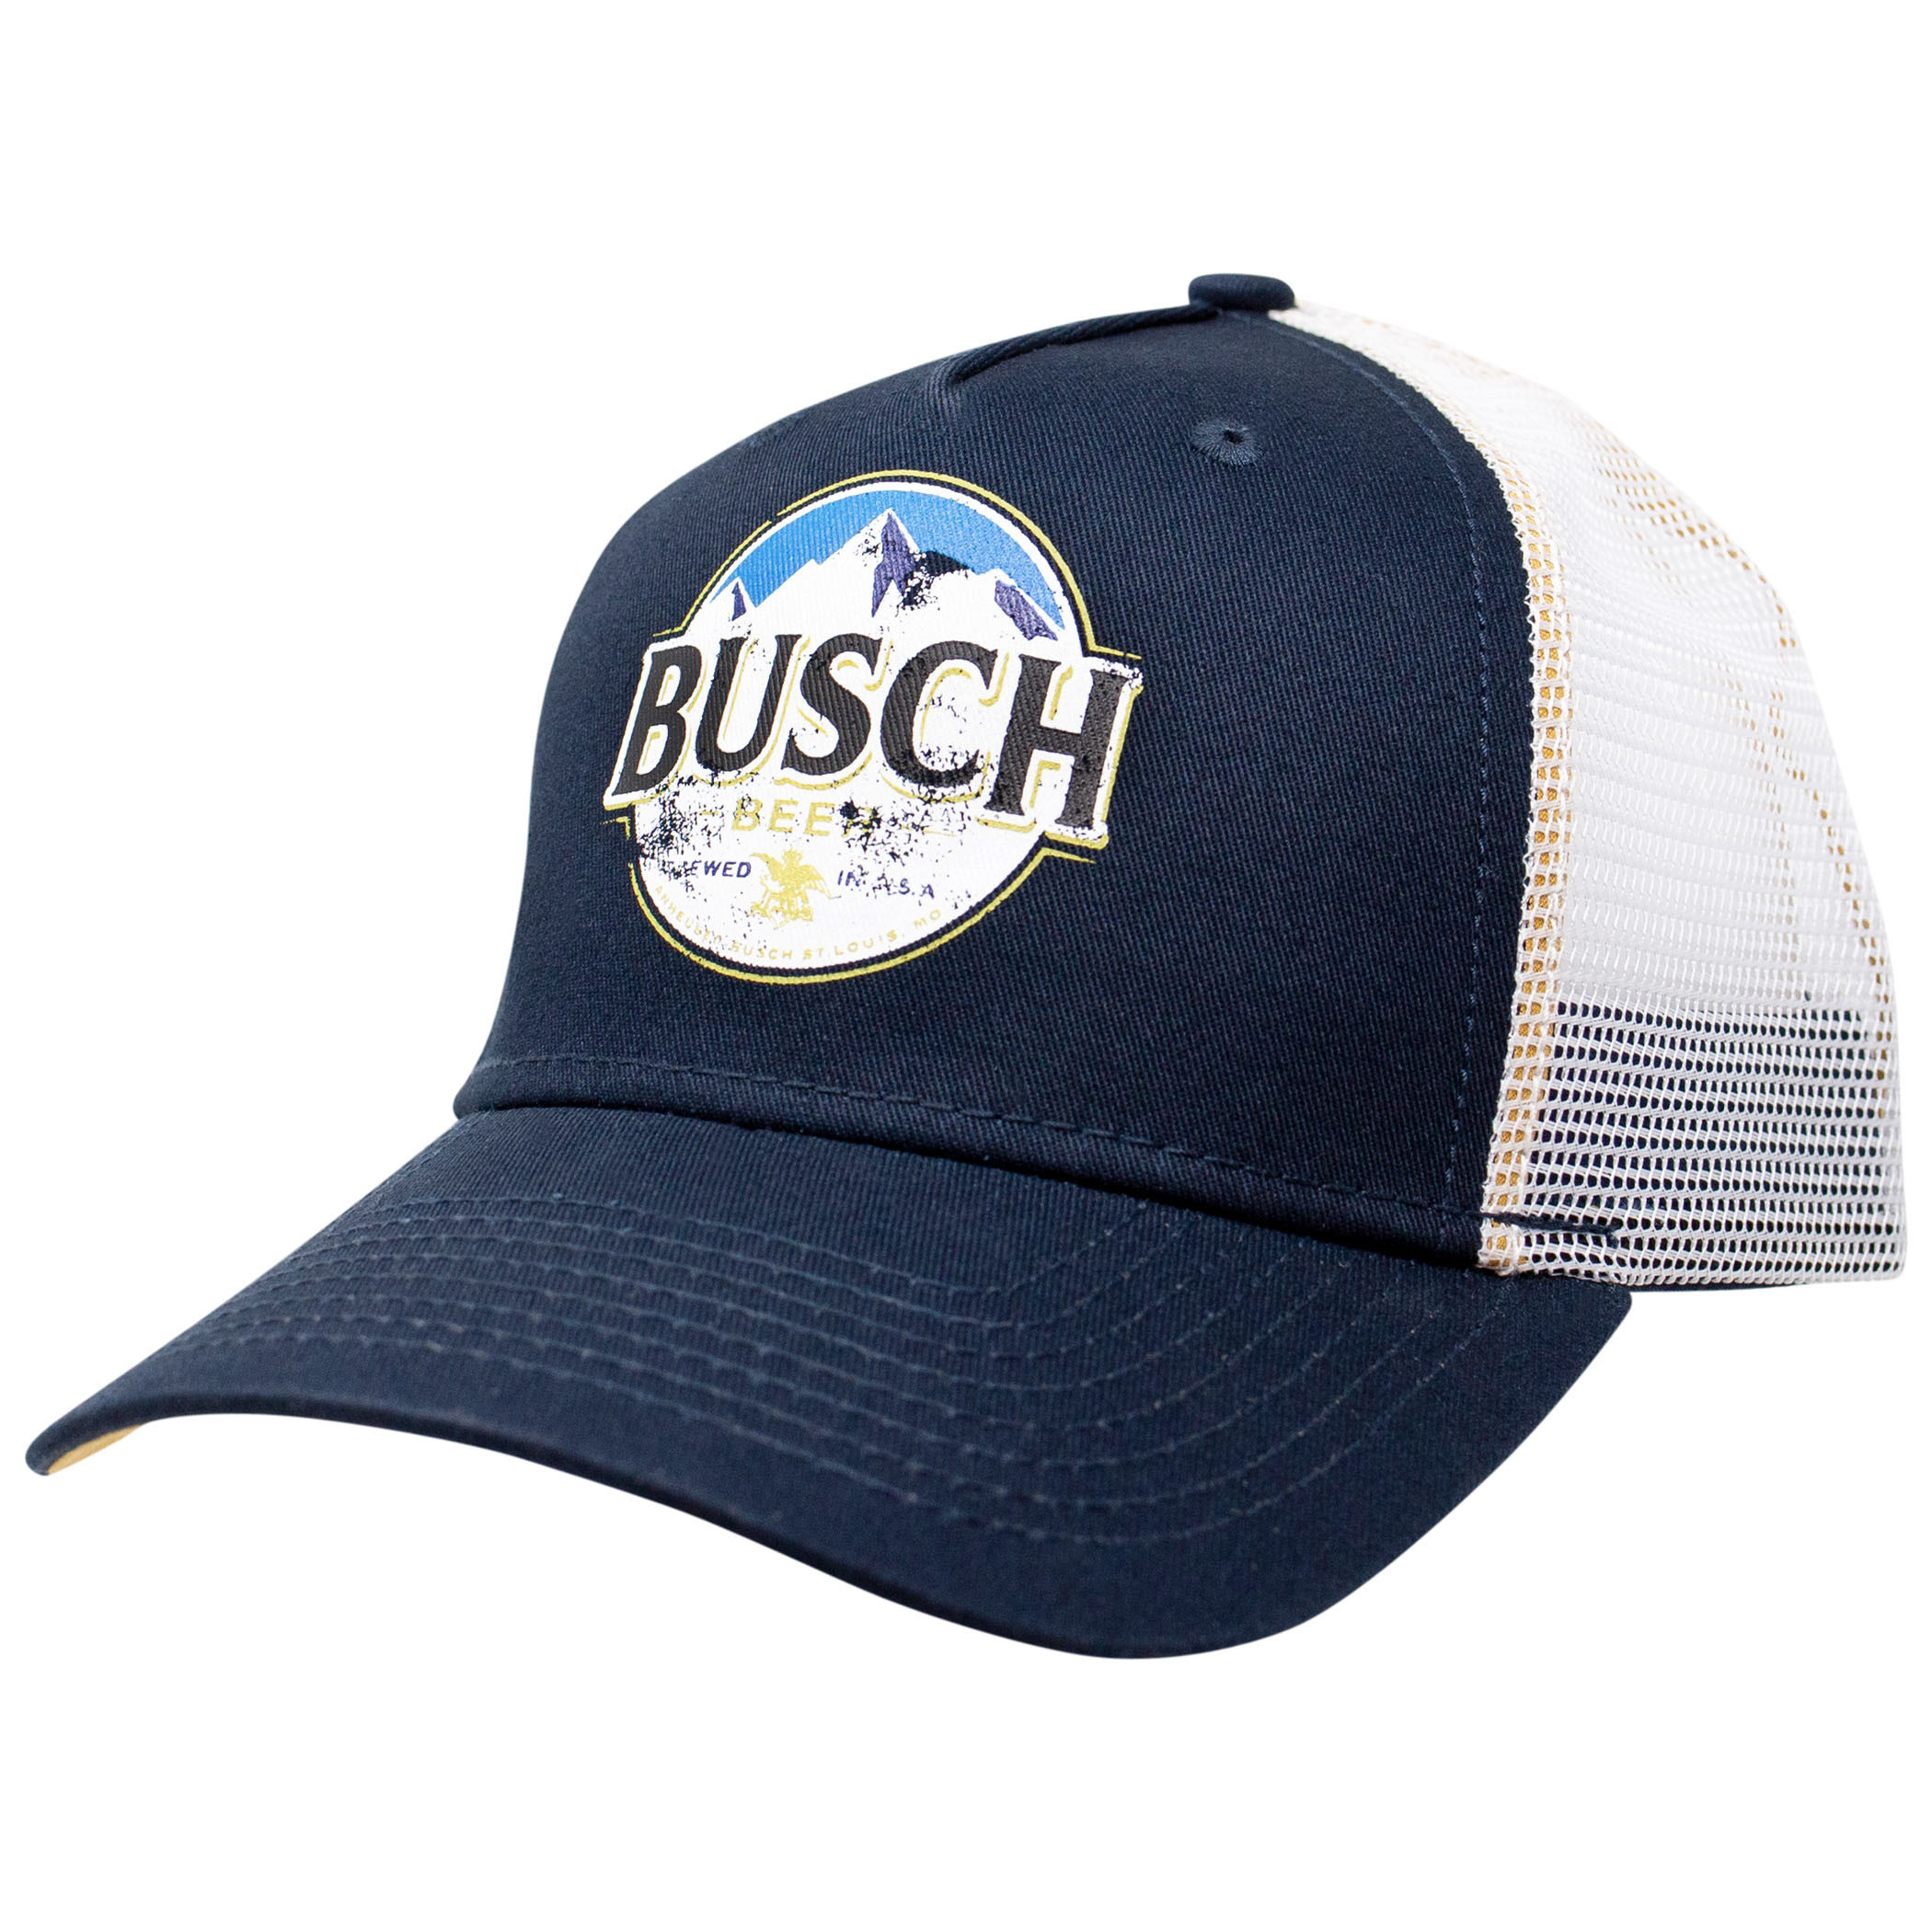 Busch Adjustable Trucker Hat